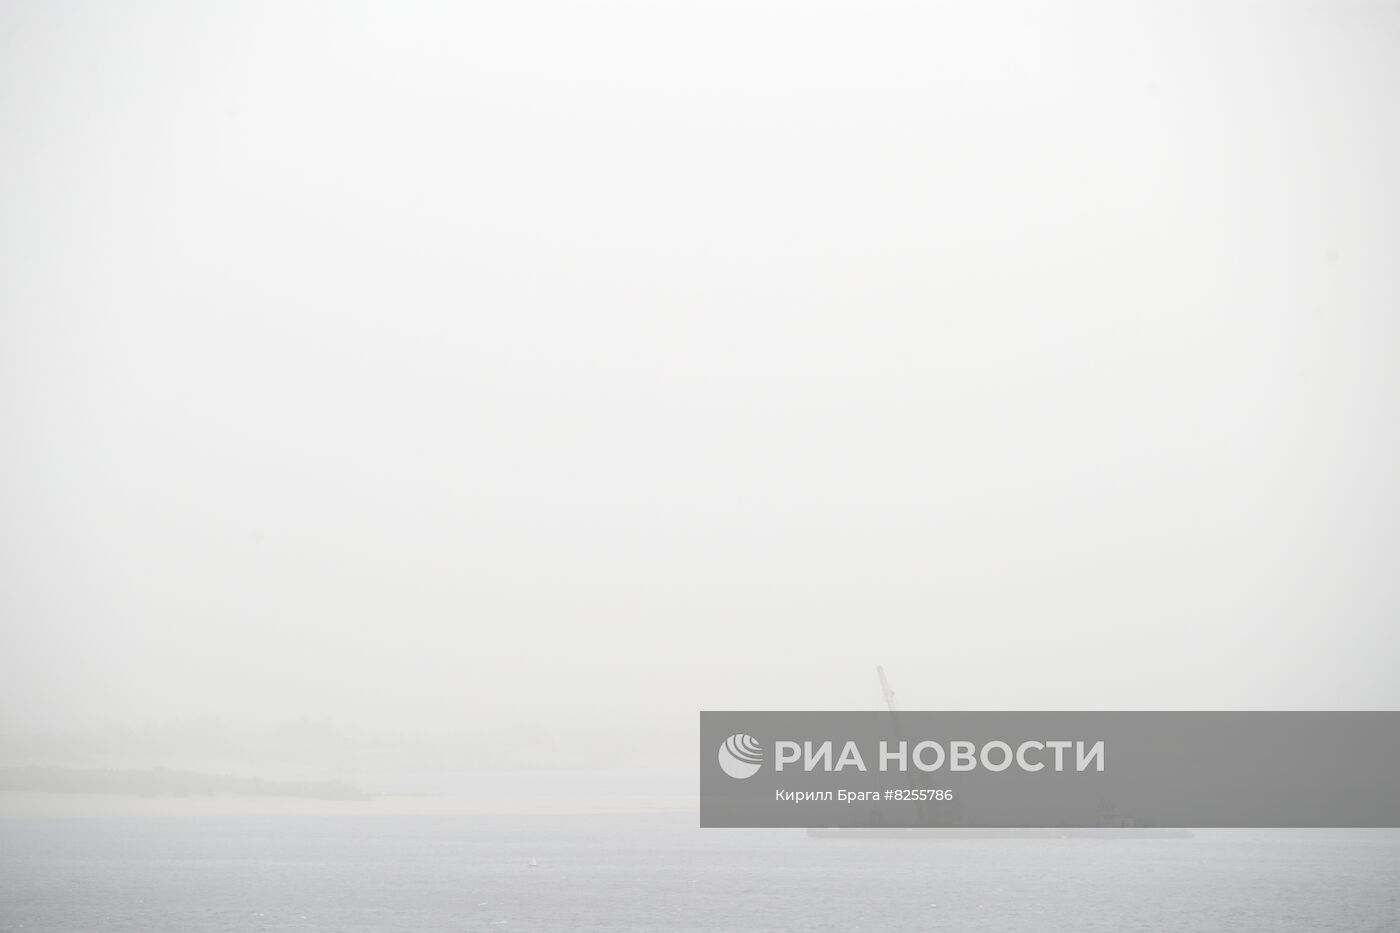 Пыльная буря в Волгограде